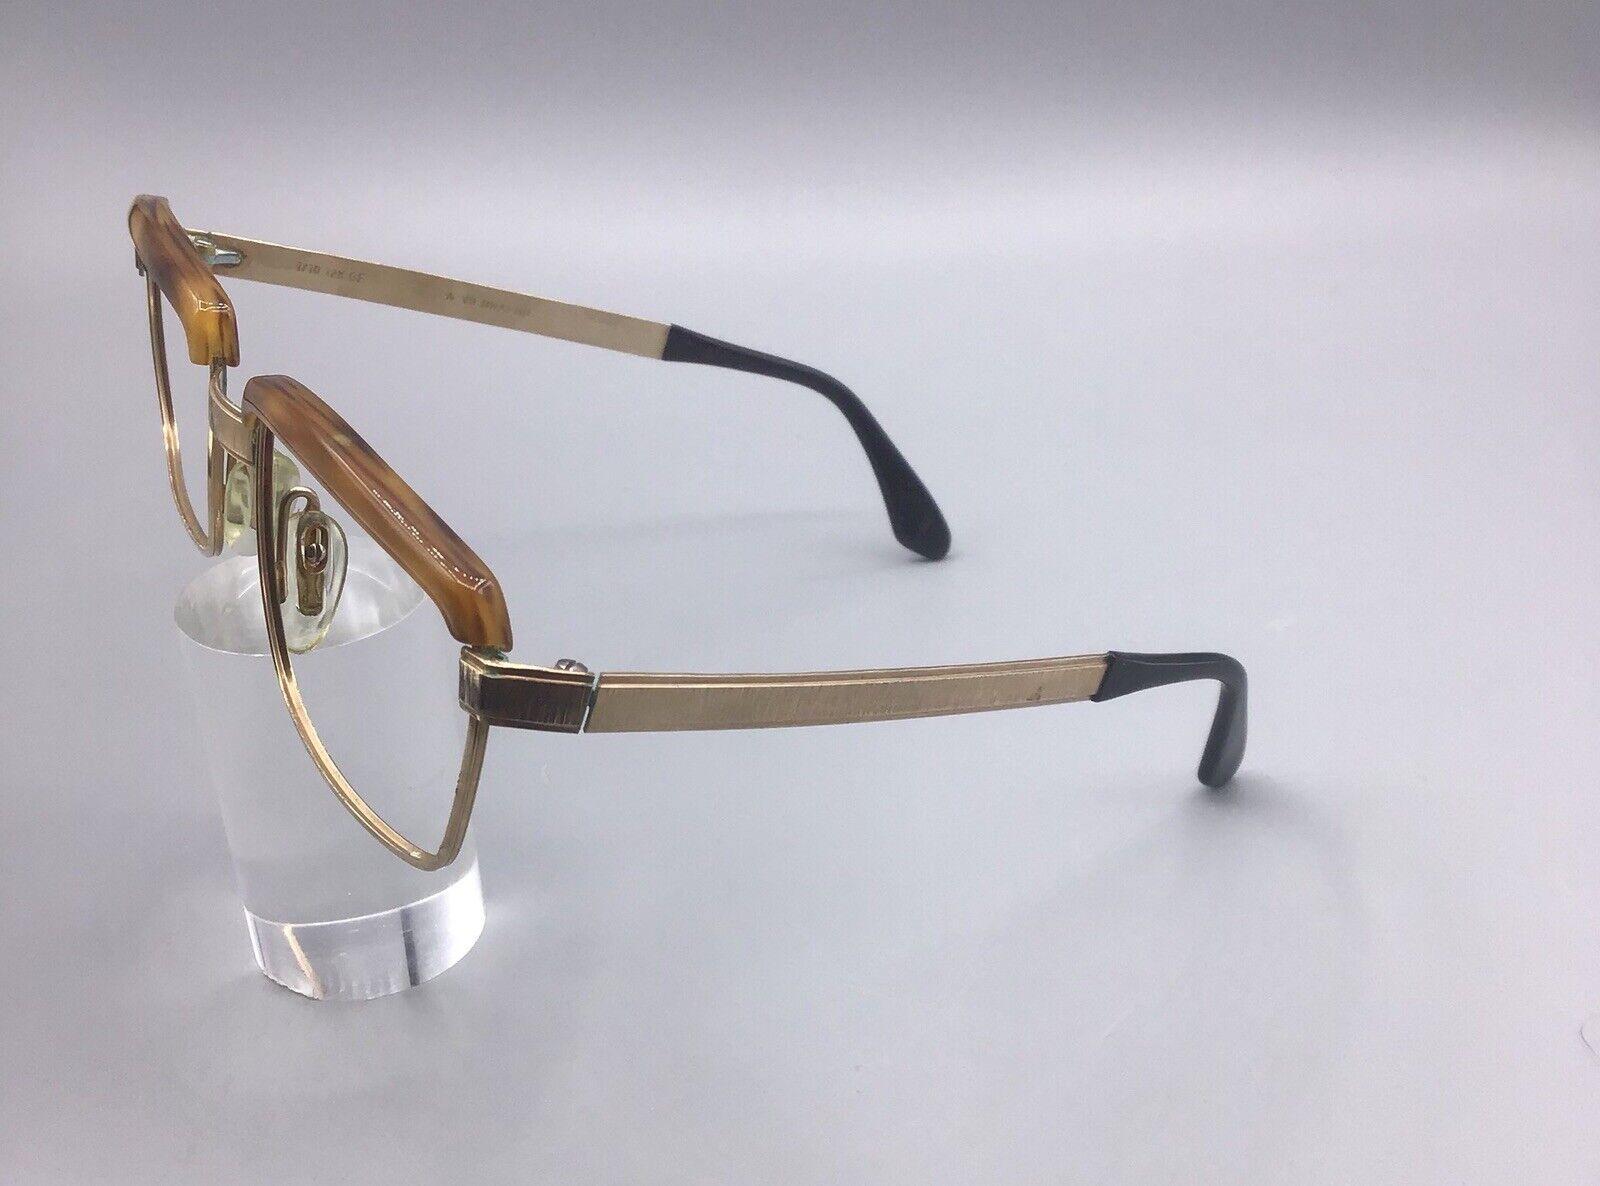 ViennaLine frame Austria 140 5 1/2 occhiale vintage brillen lunettes 1/10 12 KGF